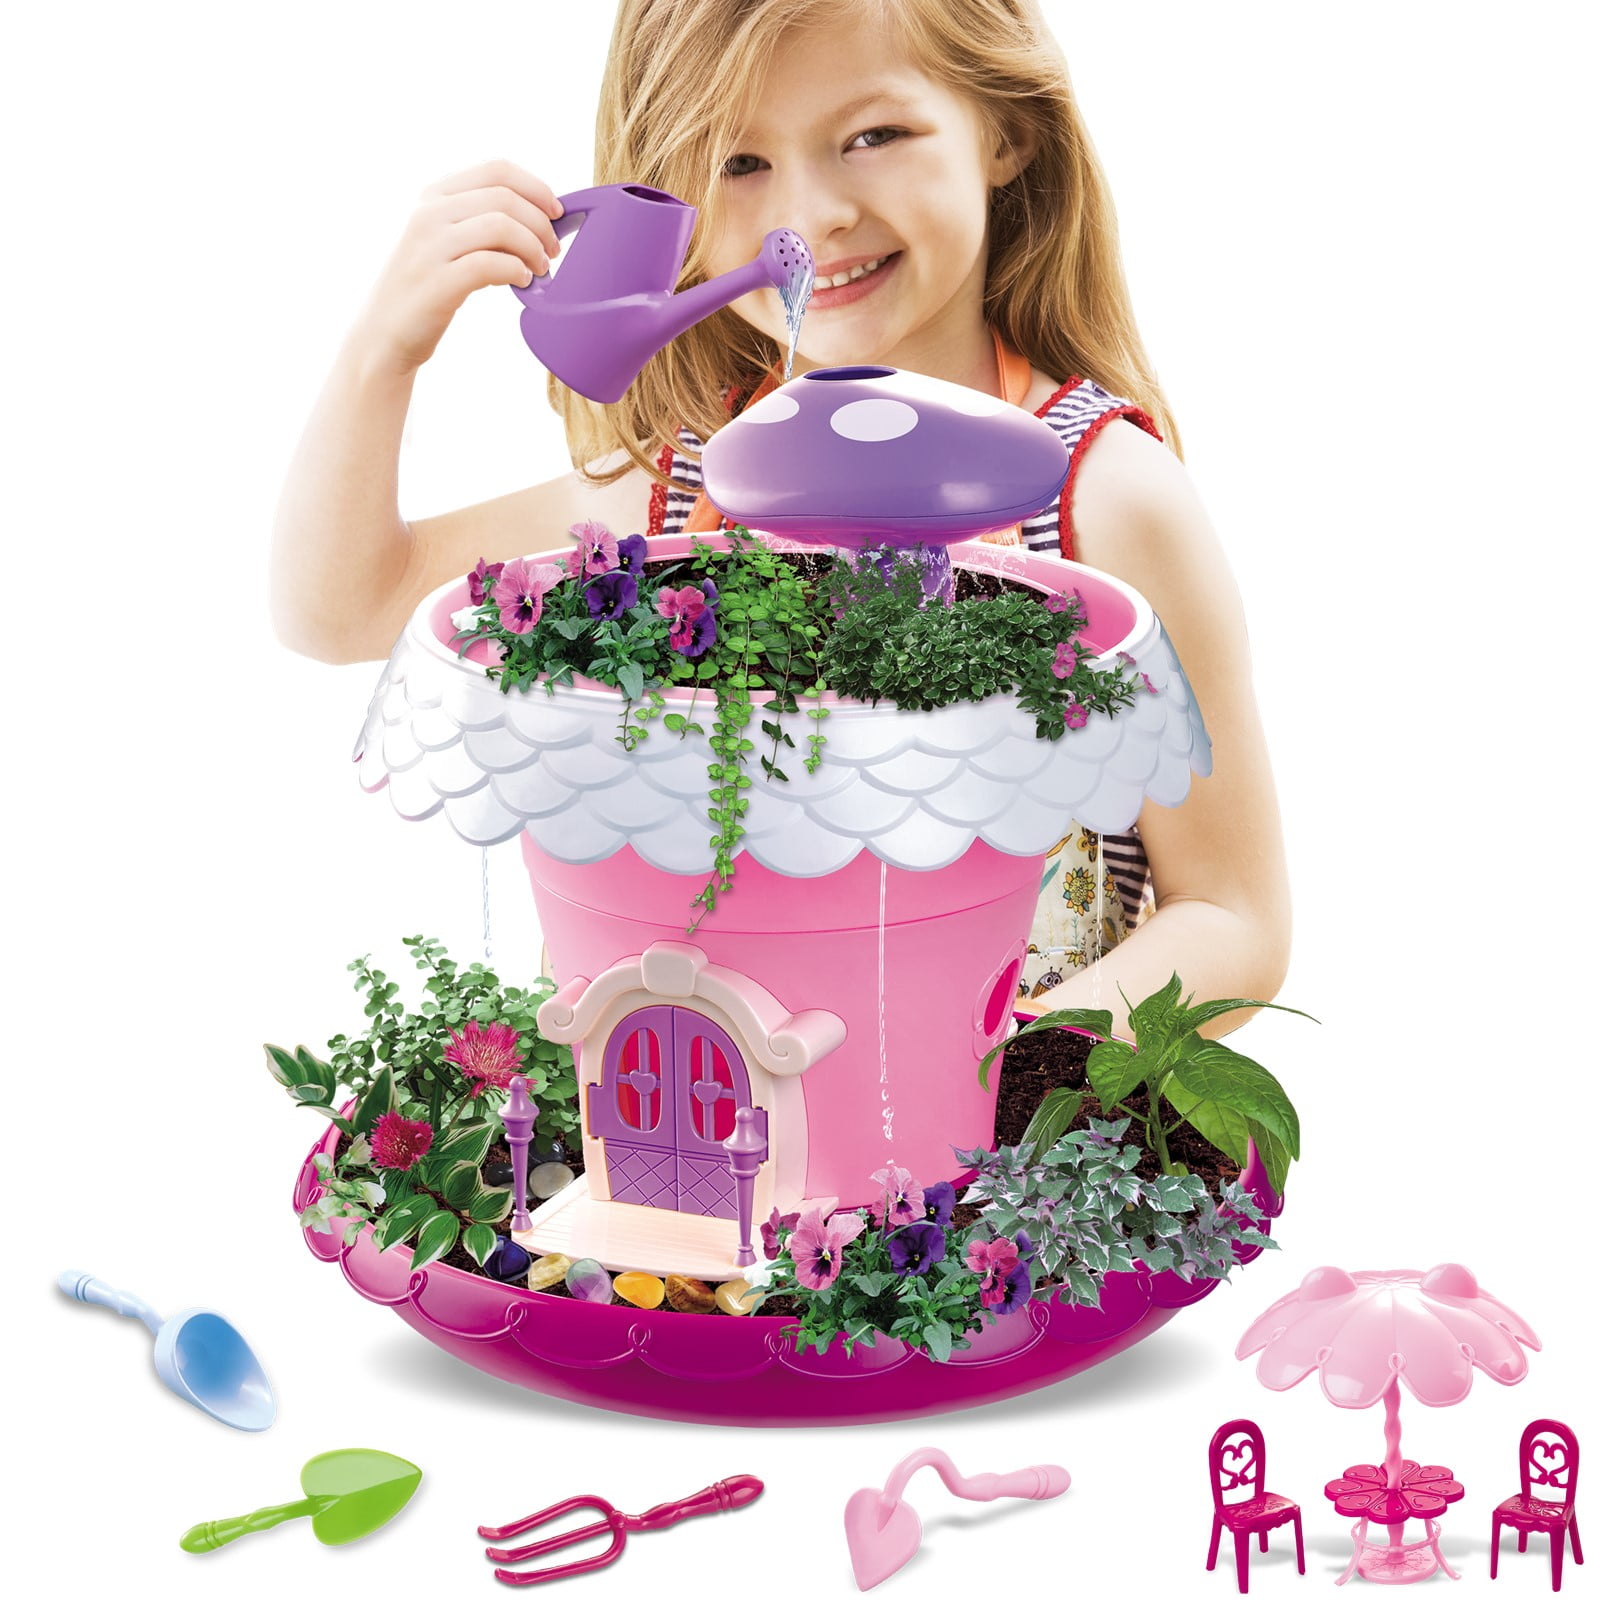 Springtime Fun Baking Set - Fairhaven Toy Garden